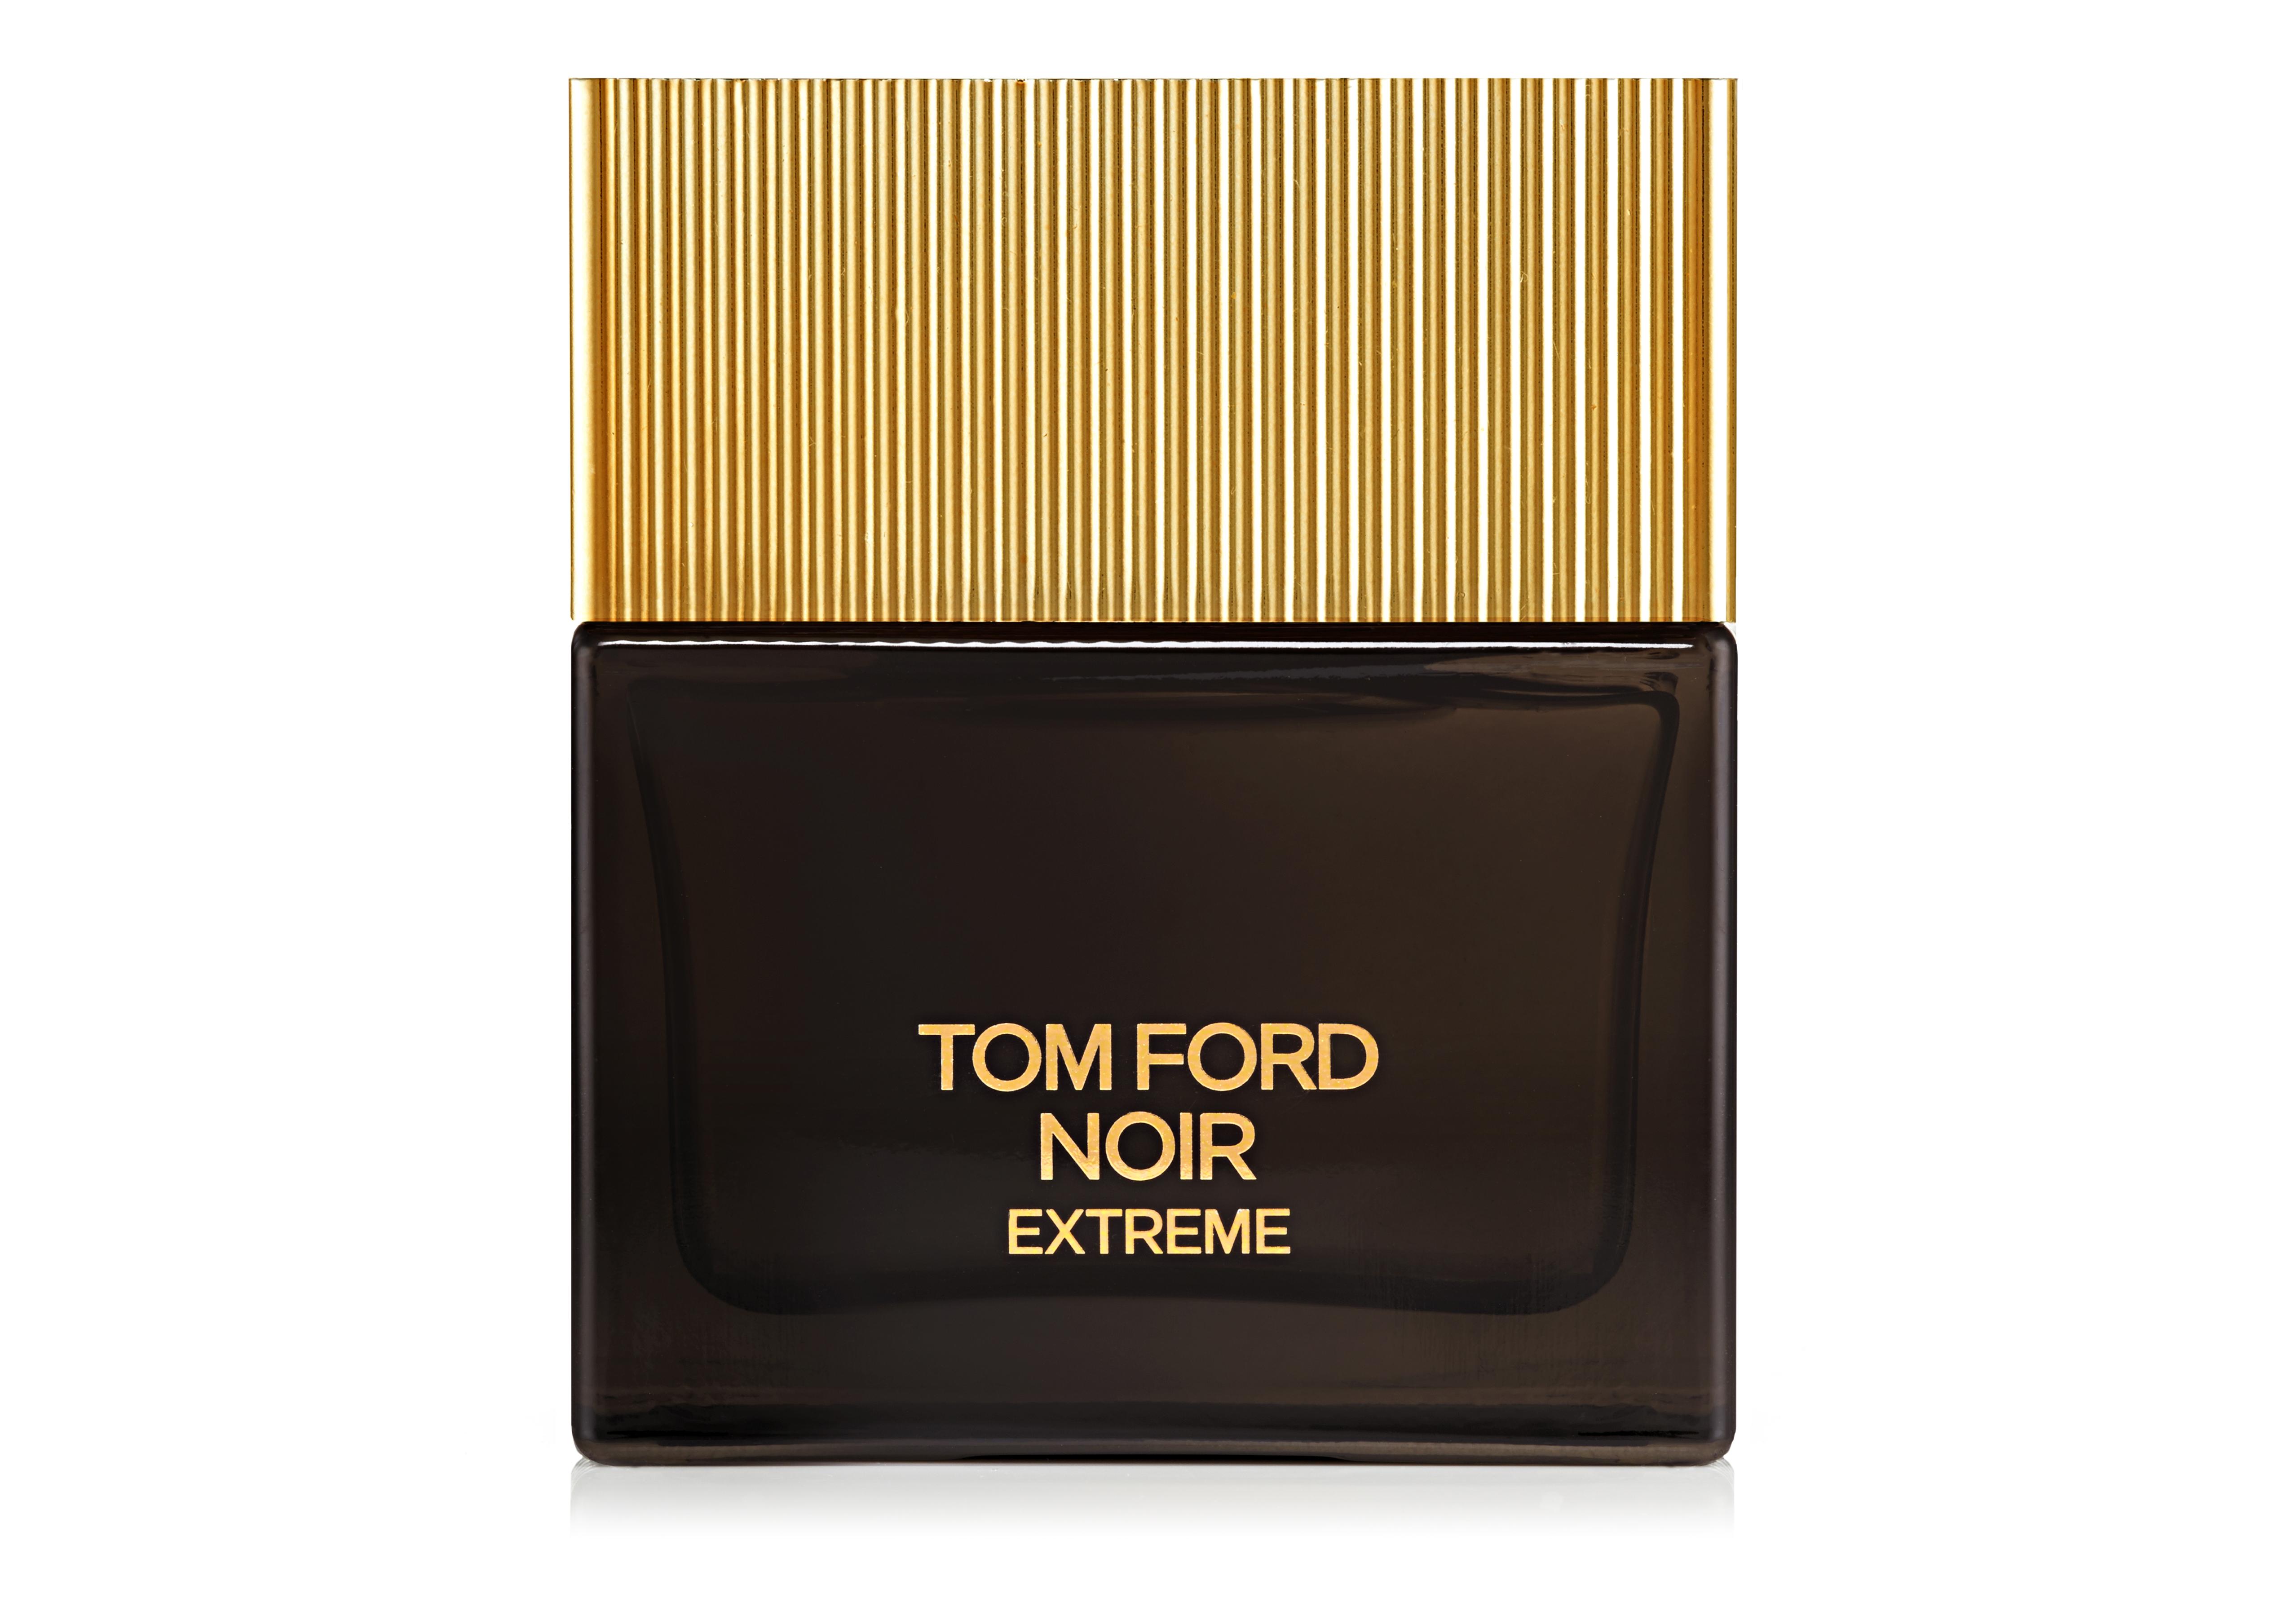 Tom Ford TOM FORD NOIR EXTREME EAU DE PARFUM 